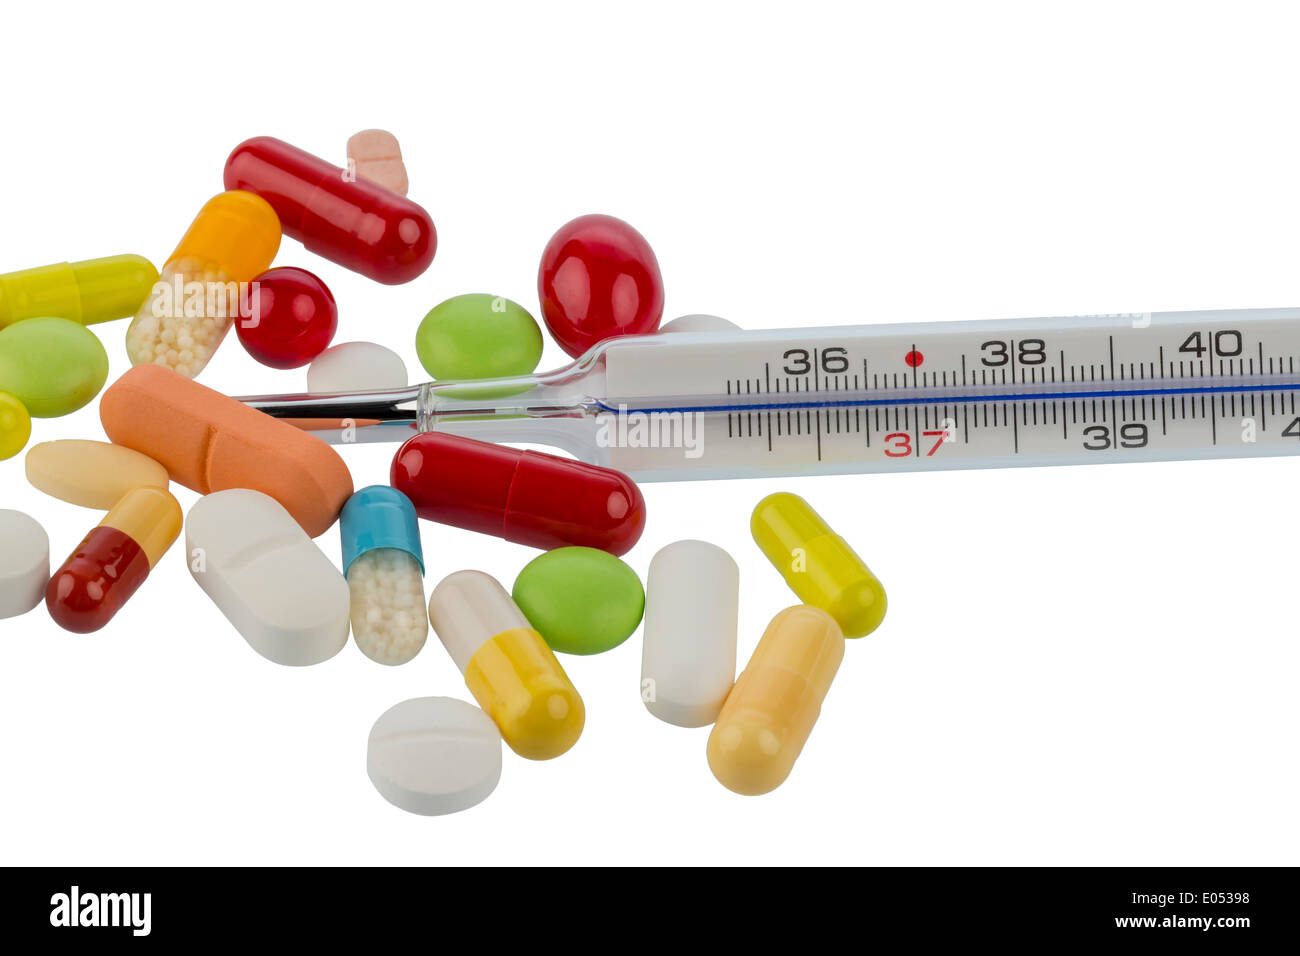 A clinical thermometer and tablets lie on a white background, Ein Fieberthermometer und Tabletten liegen auf einem weissen Hinte Stock Photo